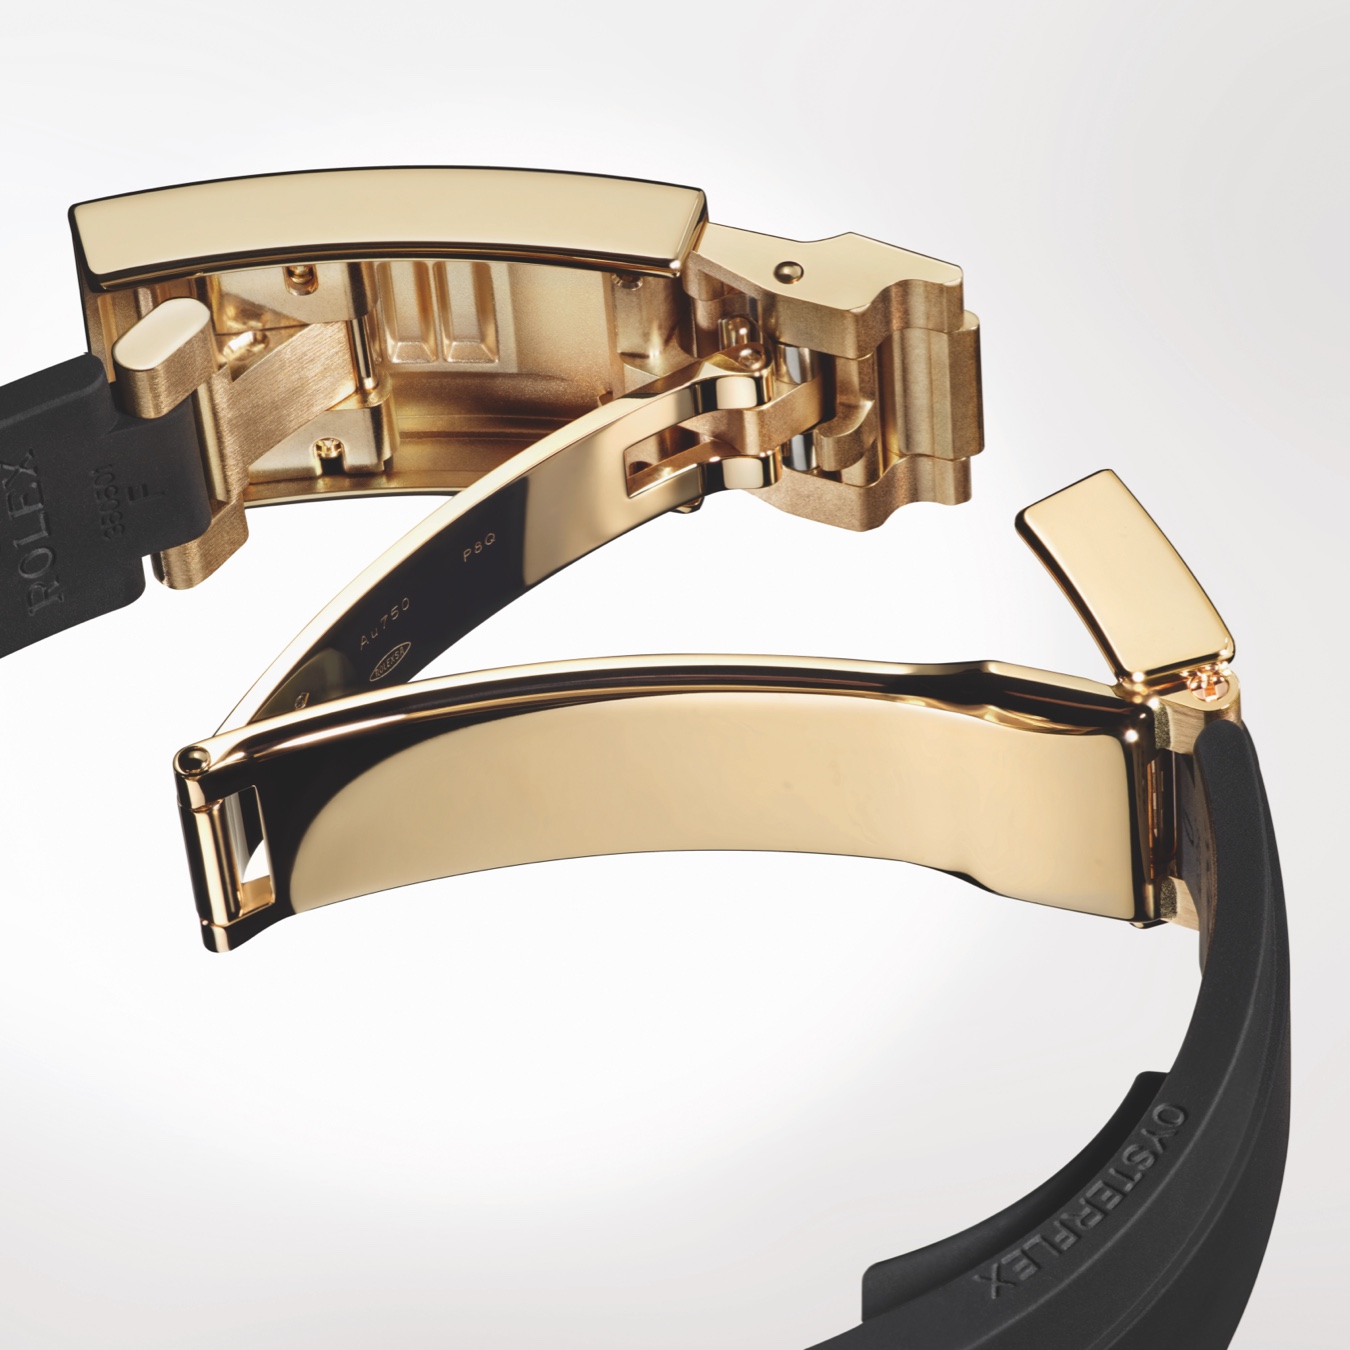 Gold Rolex watch fastening on link strap